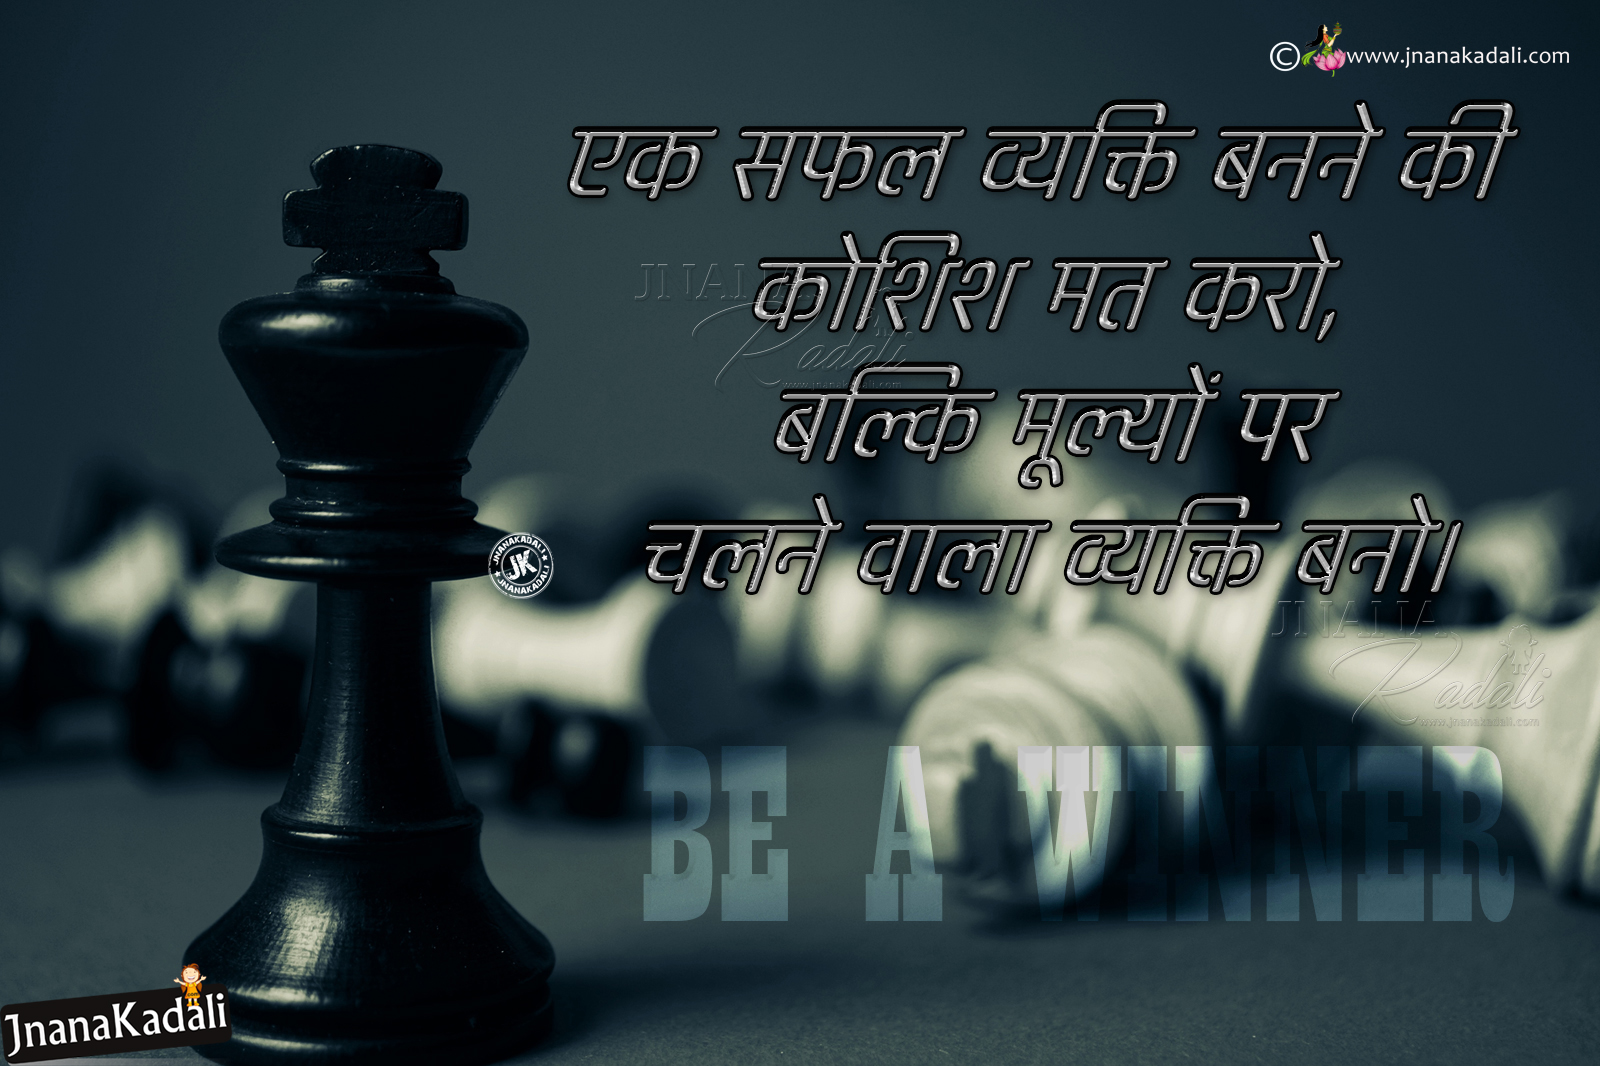 Hindi Success Shayari-Life Changing Motivational Words for Success in